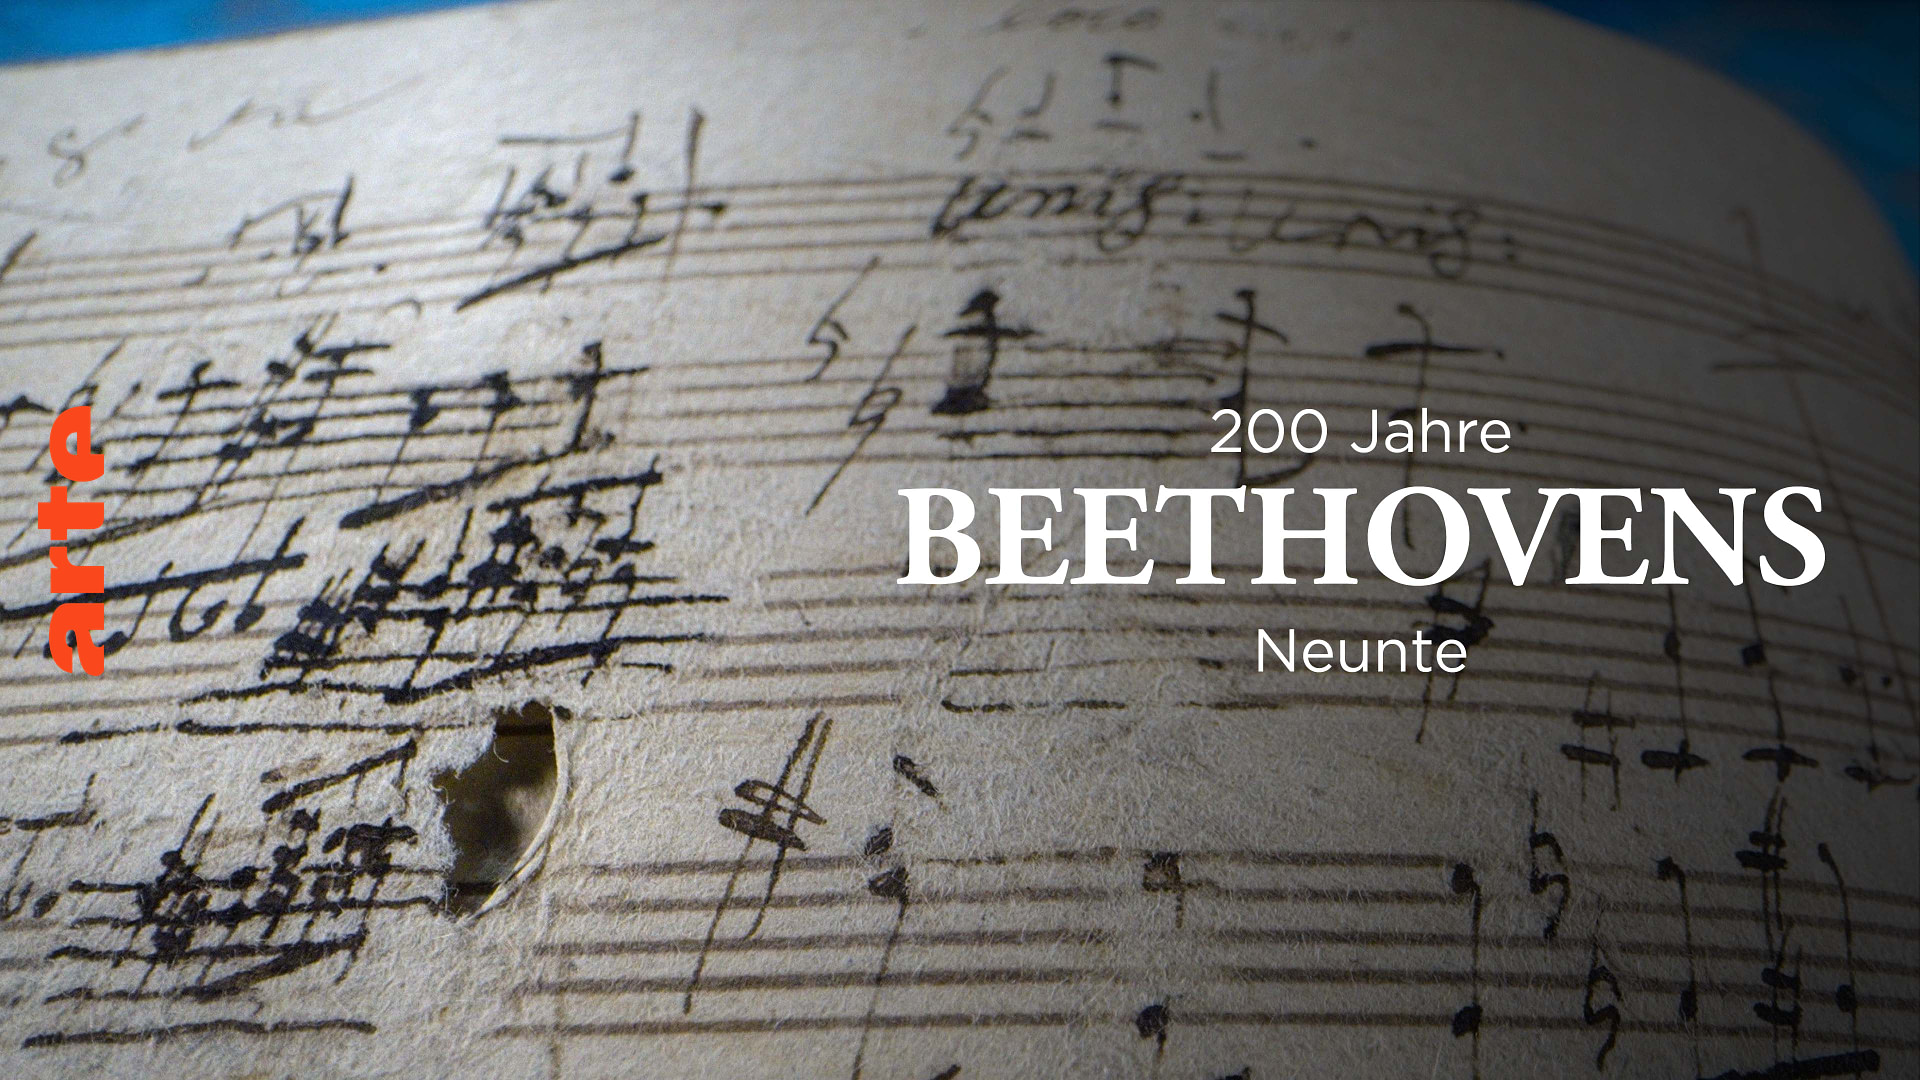 Die Macht der Musik - 200 Jahre Beethovens Neunte